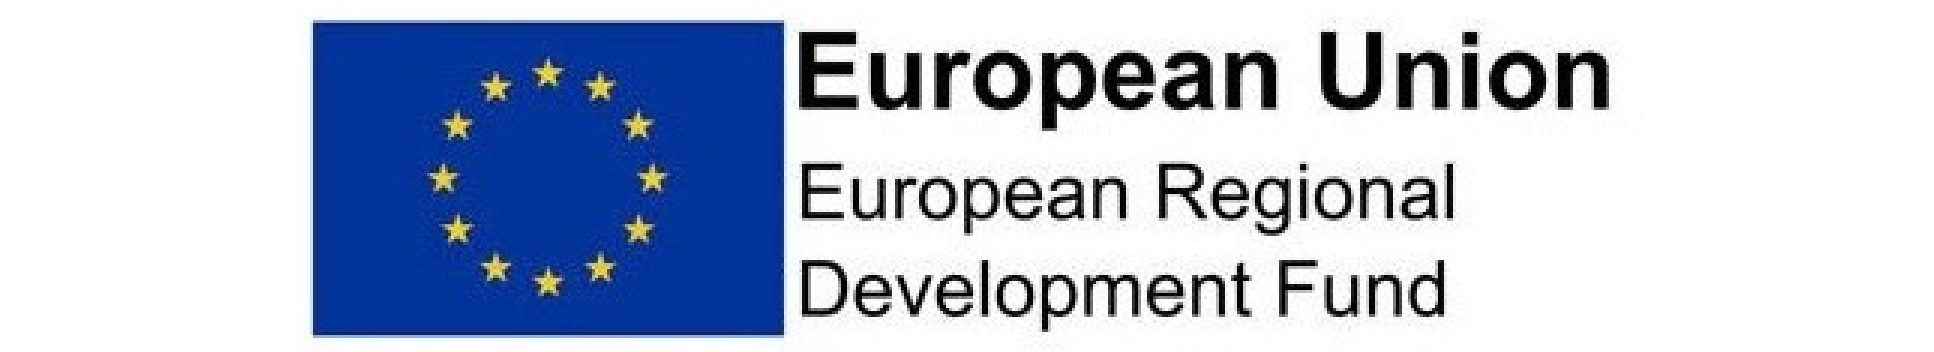 European Union European Regional Development Funding (ERDF) logo